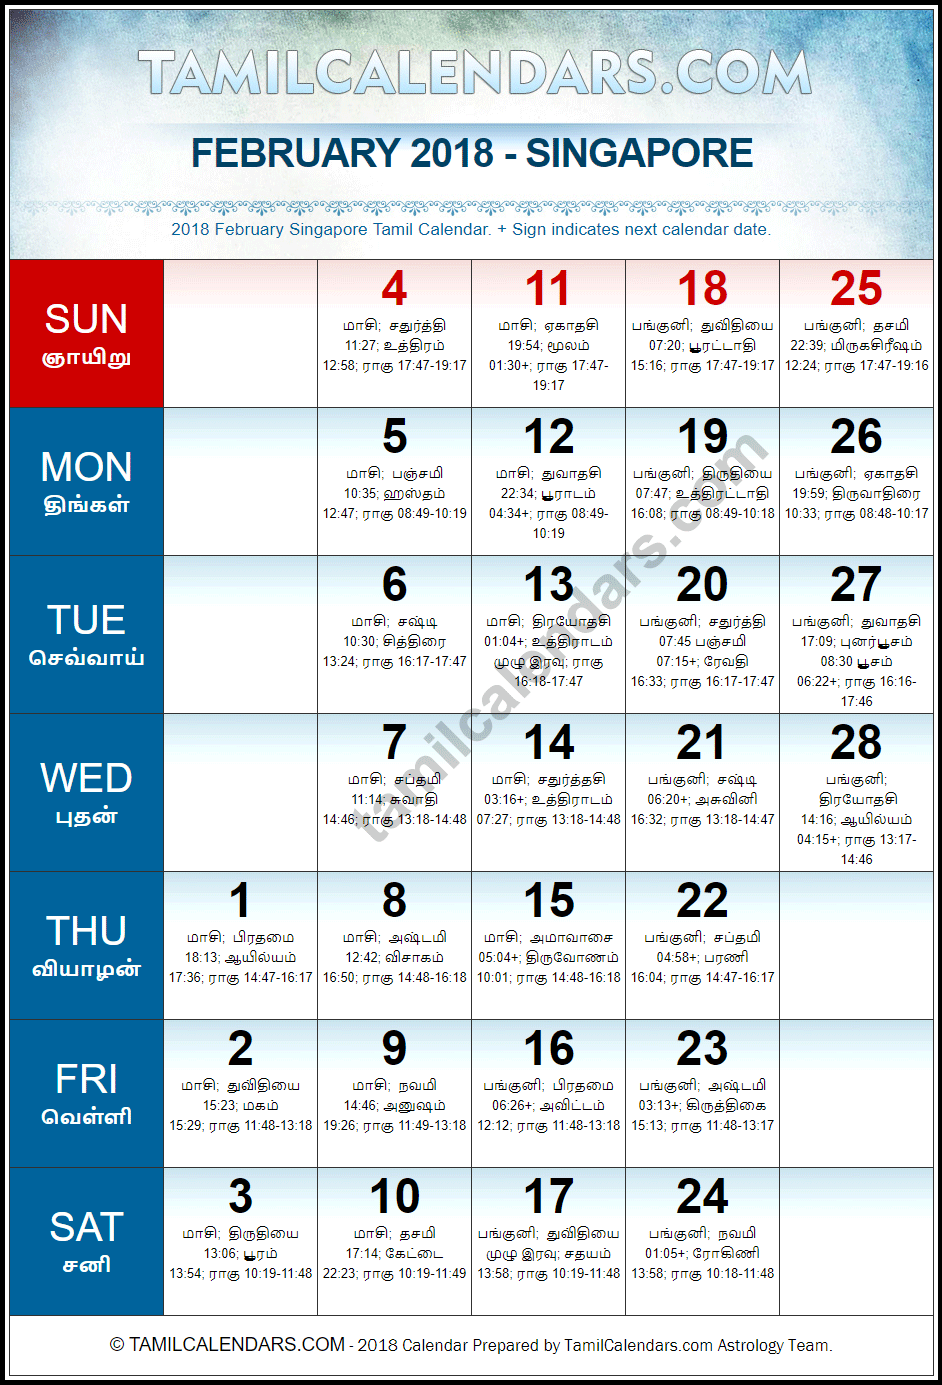 February 2018 Tamil Calendar for Singapore